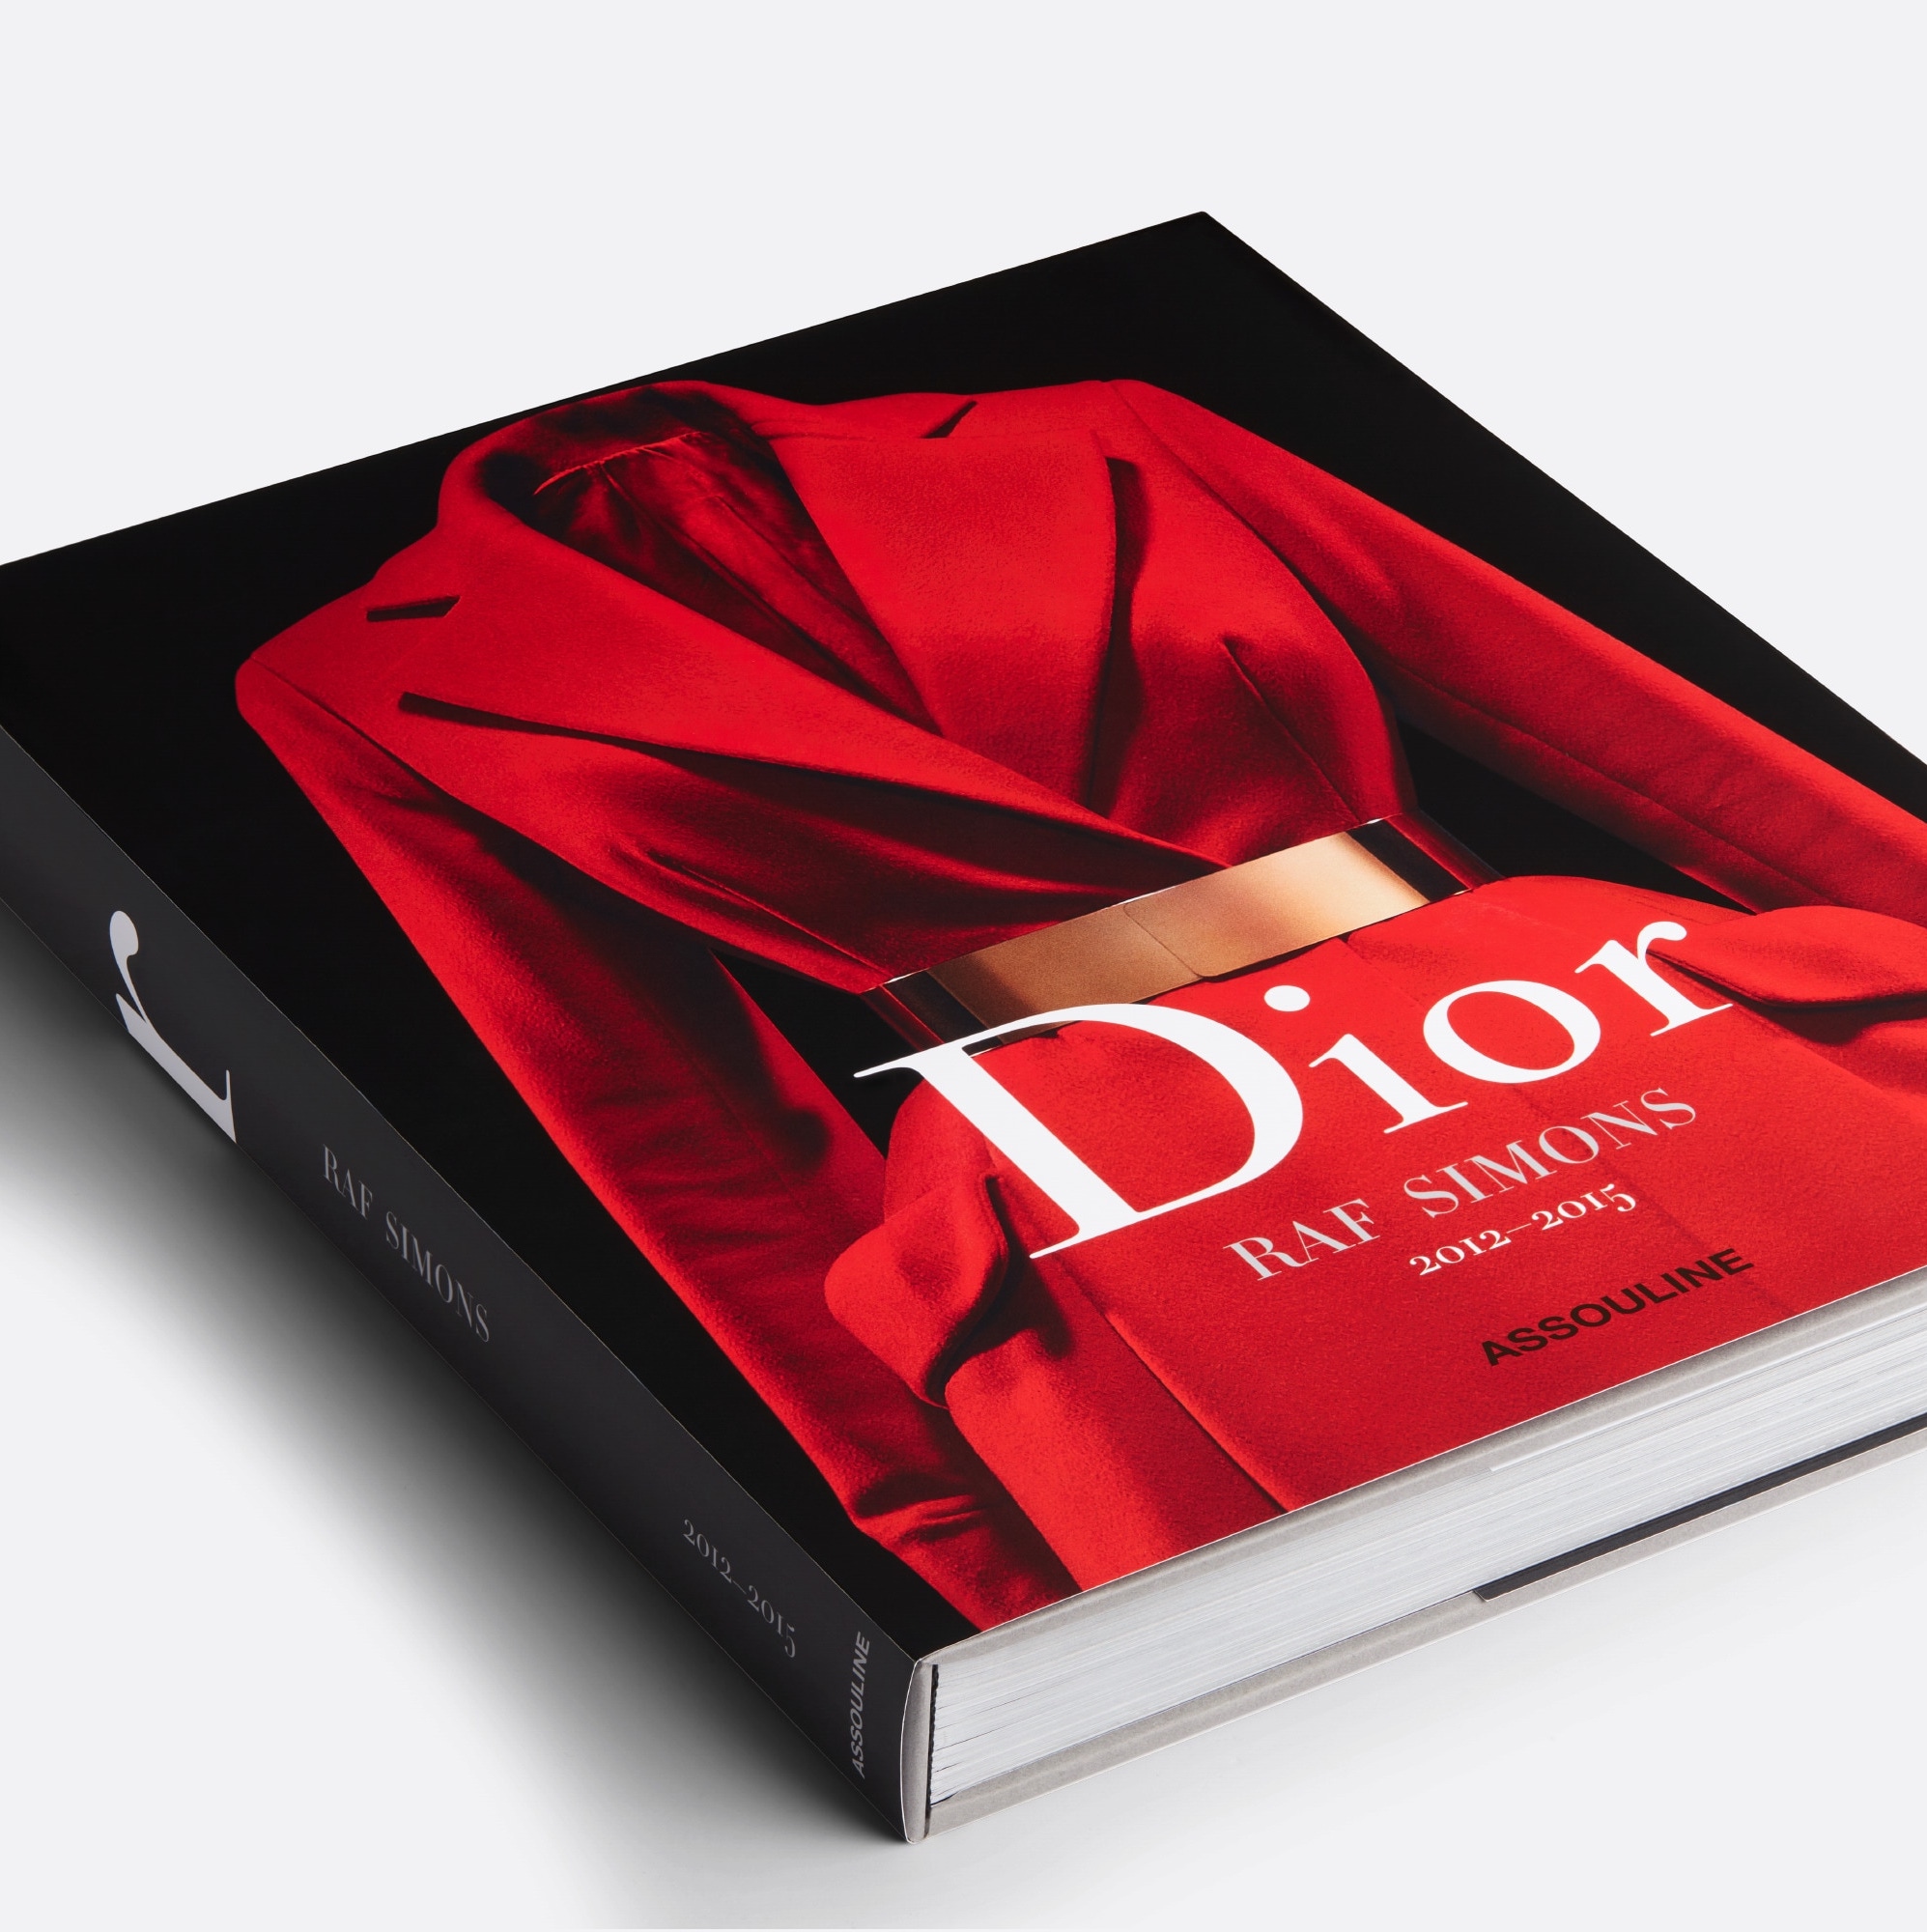 Dior in Vogue – High Valley Books